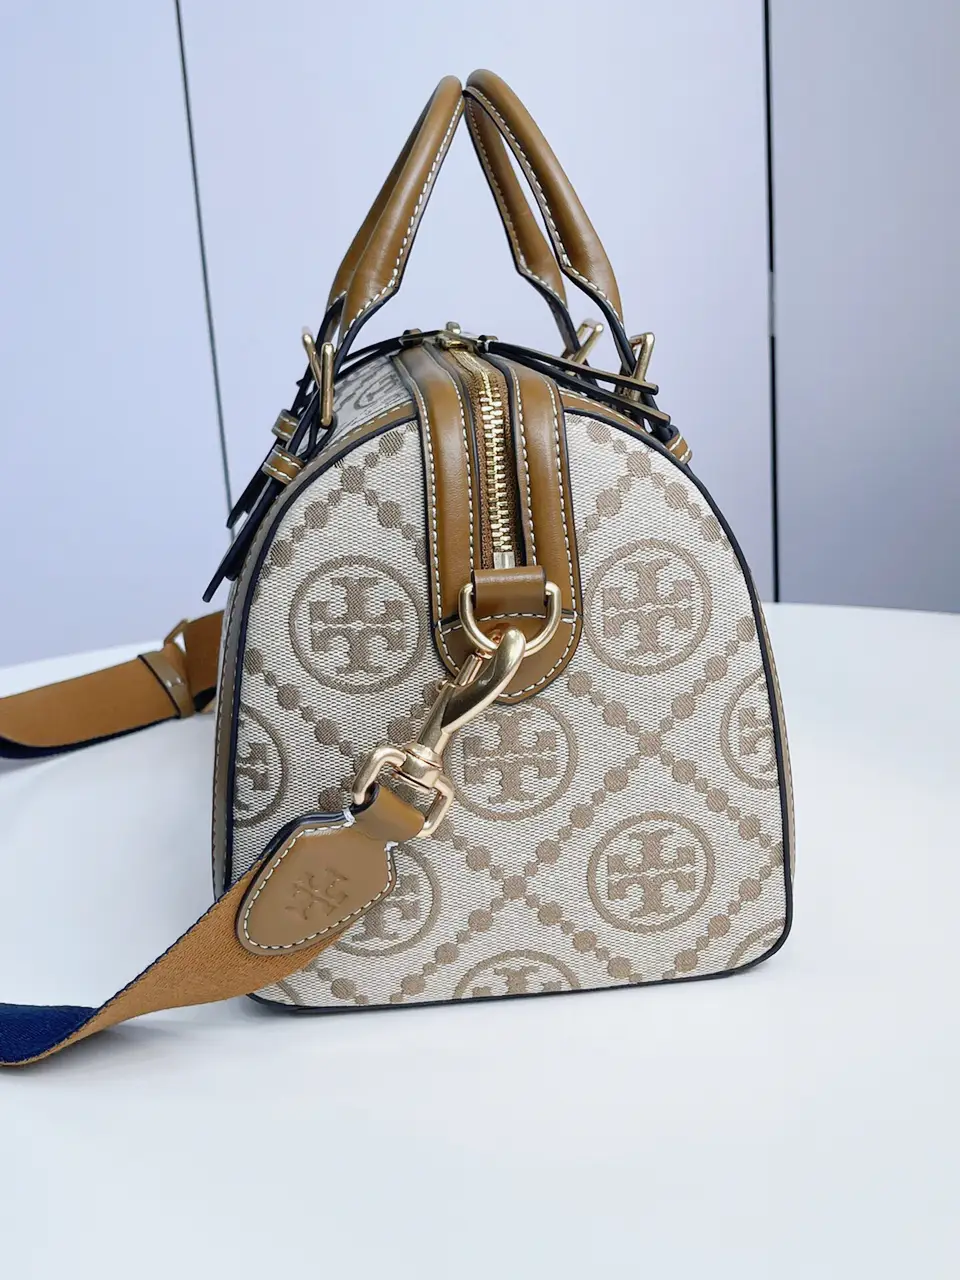 Louis Vuitton Neverfull Mon monogram #bag  Louis vuitton handbags, Louis  vuitton handbags neverfull, Louis vuitton bag outfit